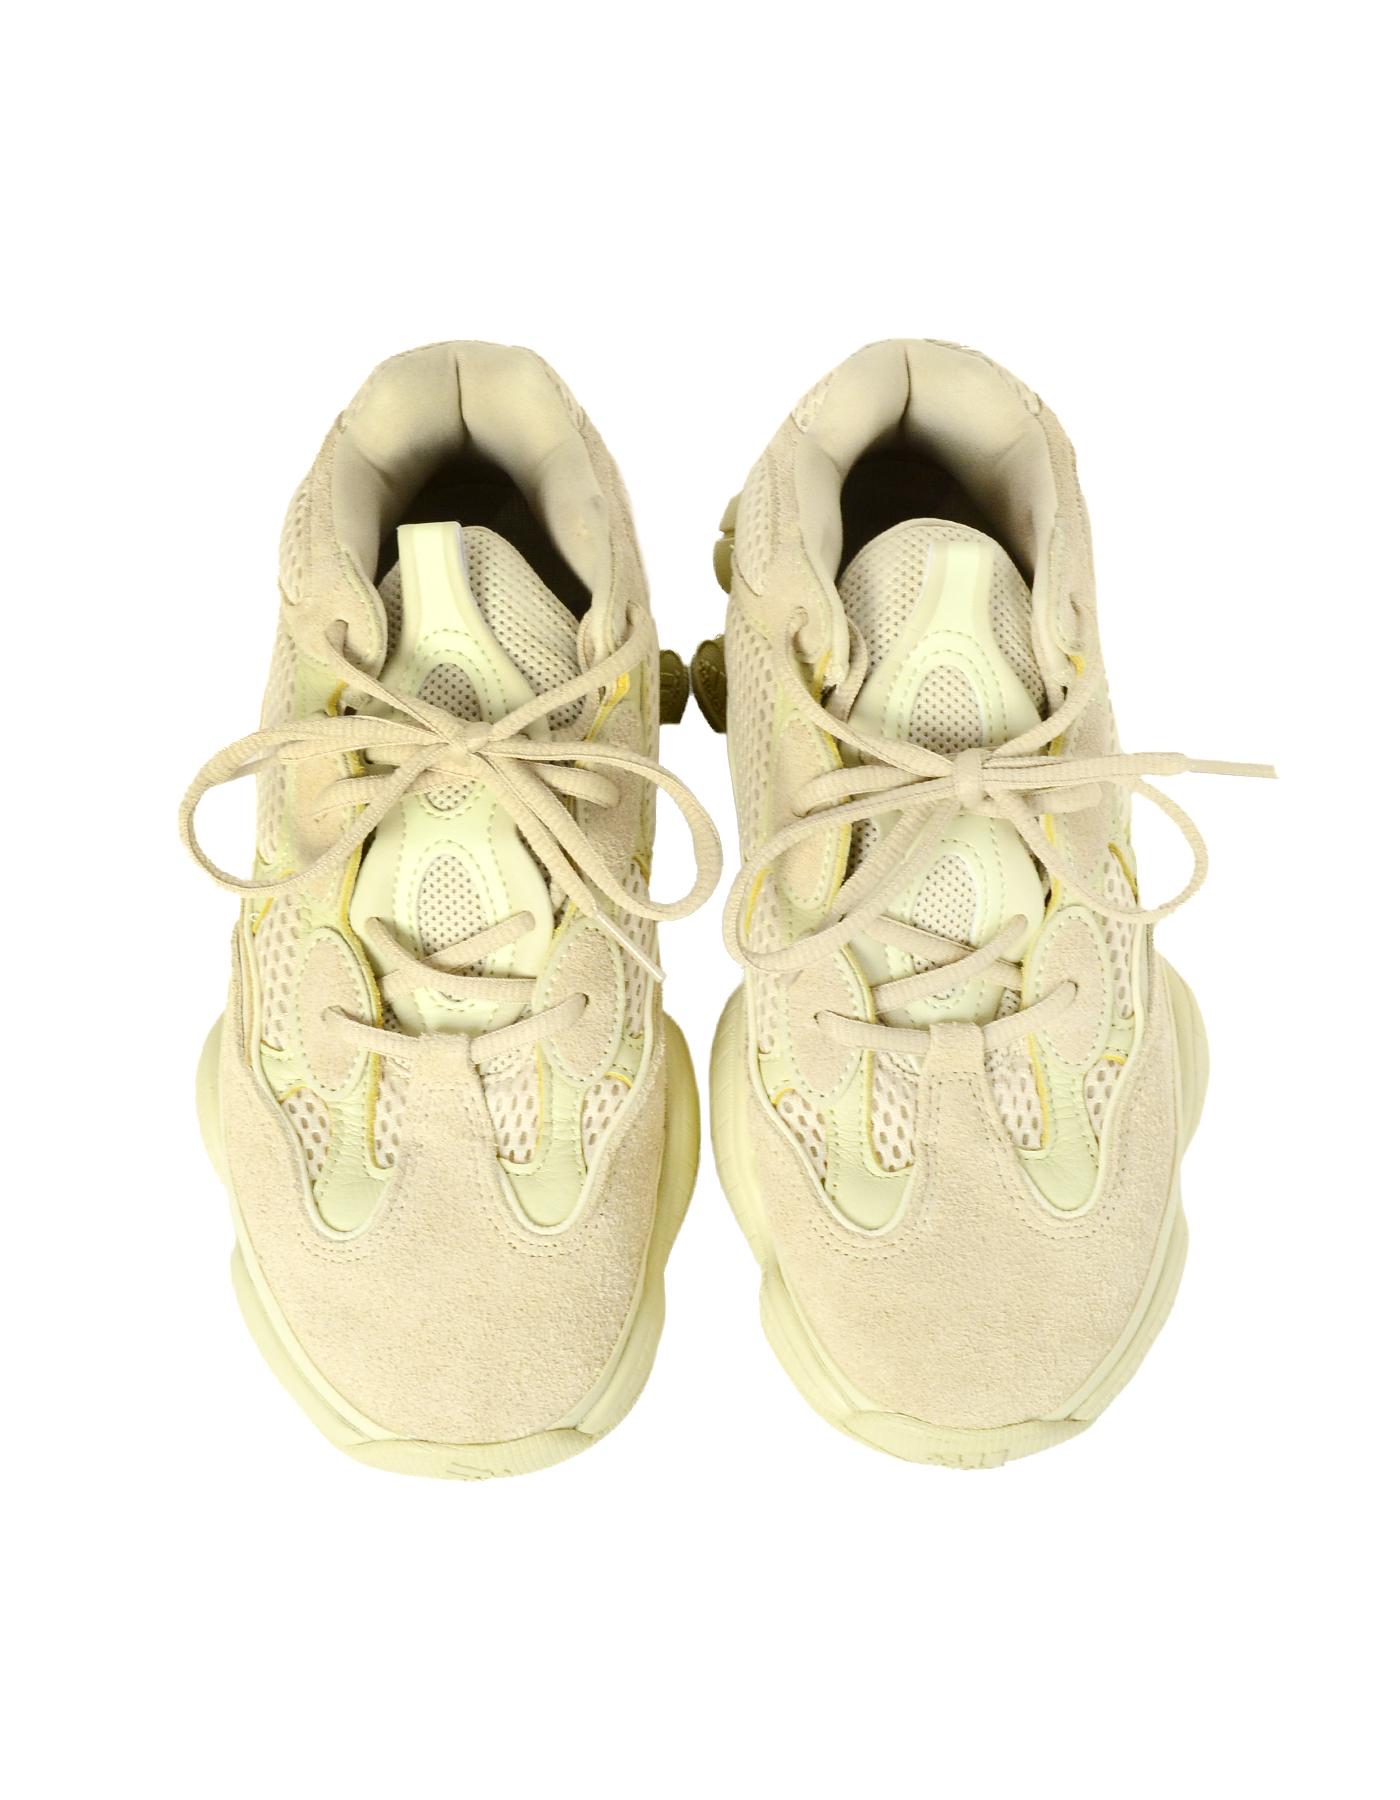 Adidas x Yeezy '18 500 Desert Rat Super Moon Yellow Tint Sneakers Sz M 7, W 8.5 für Damen oder Herren